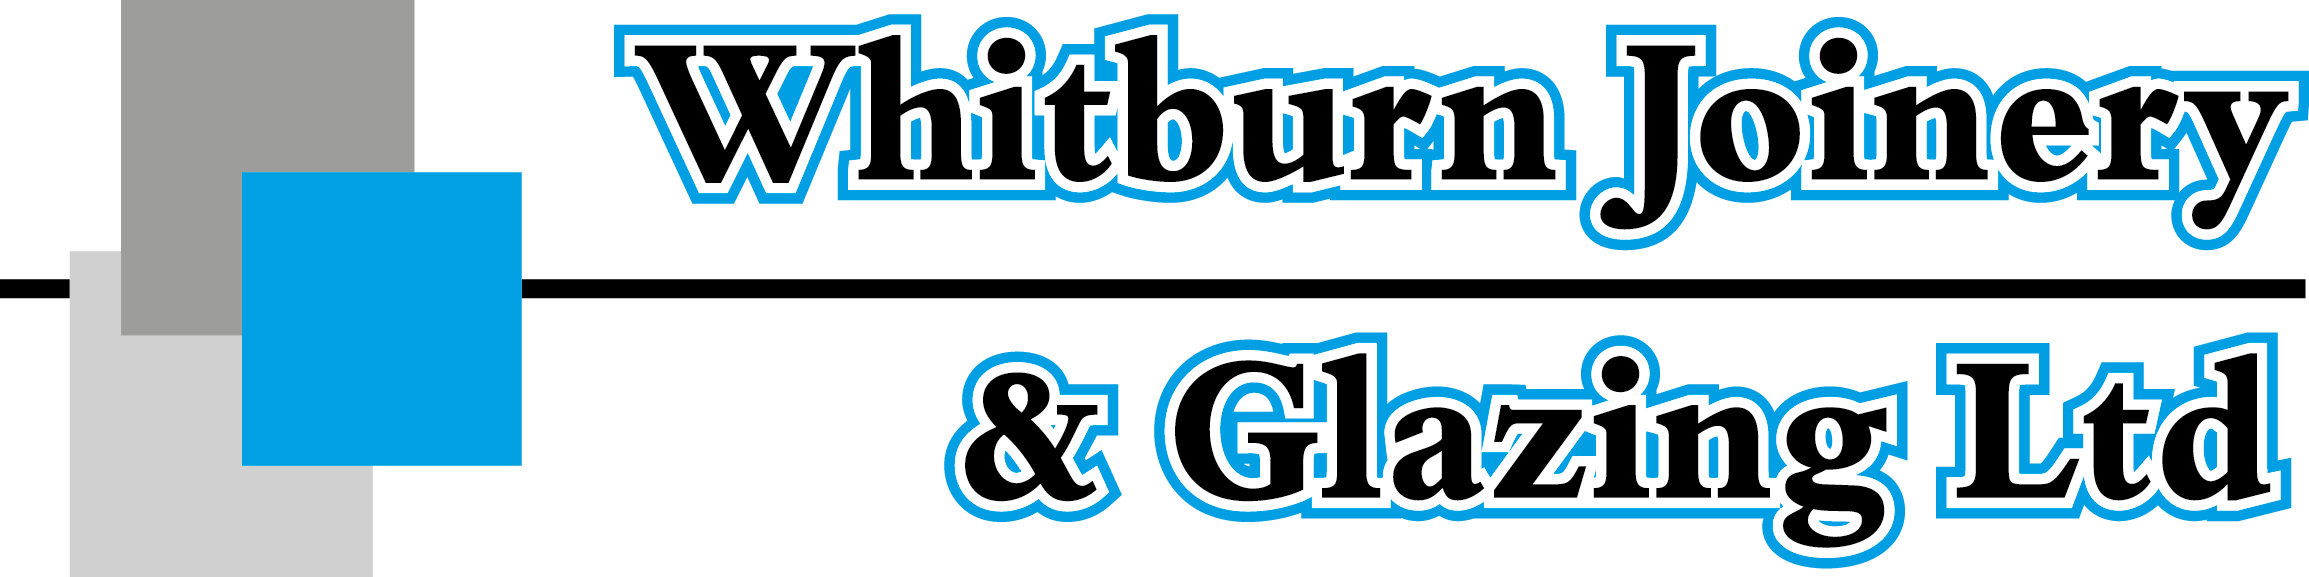 Whitburn Joinery Glazing